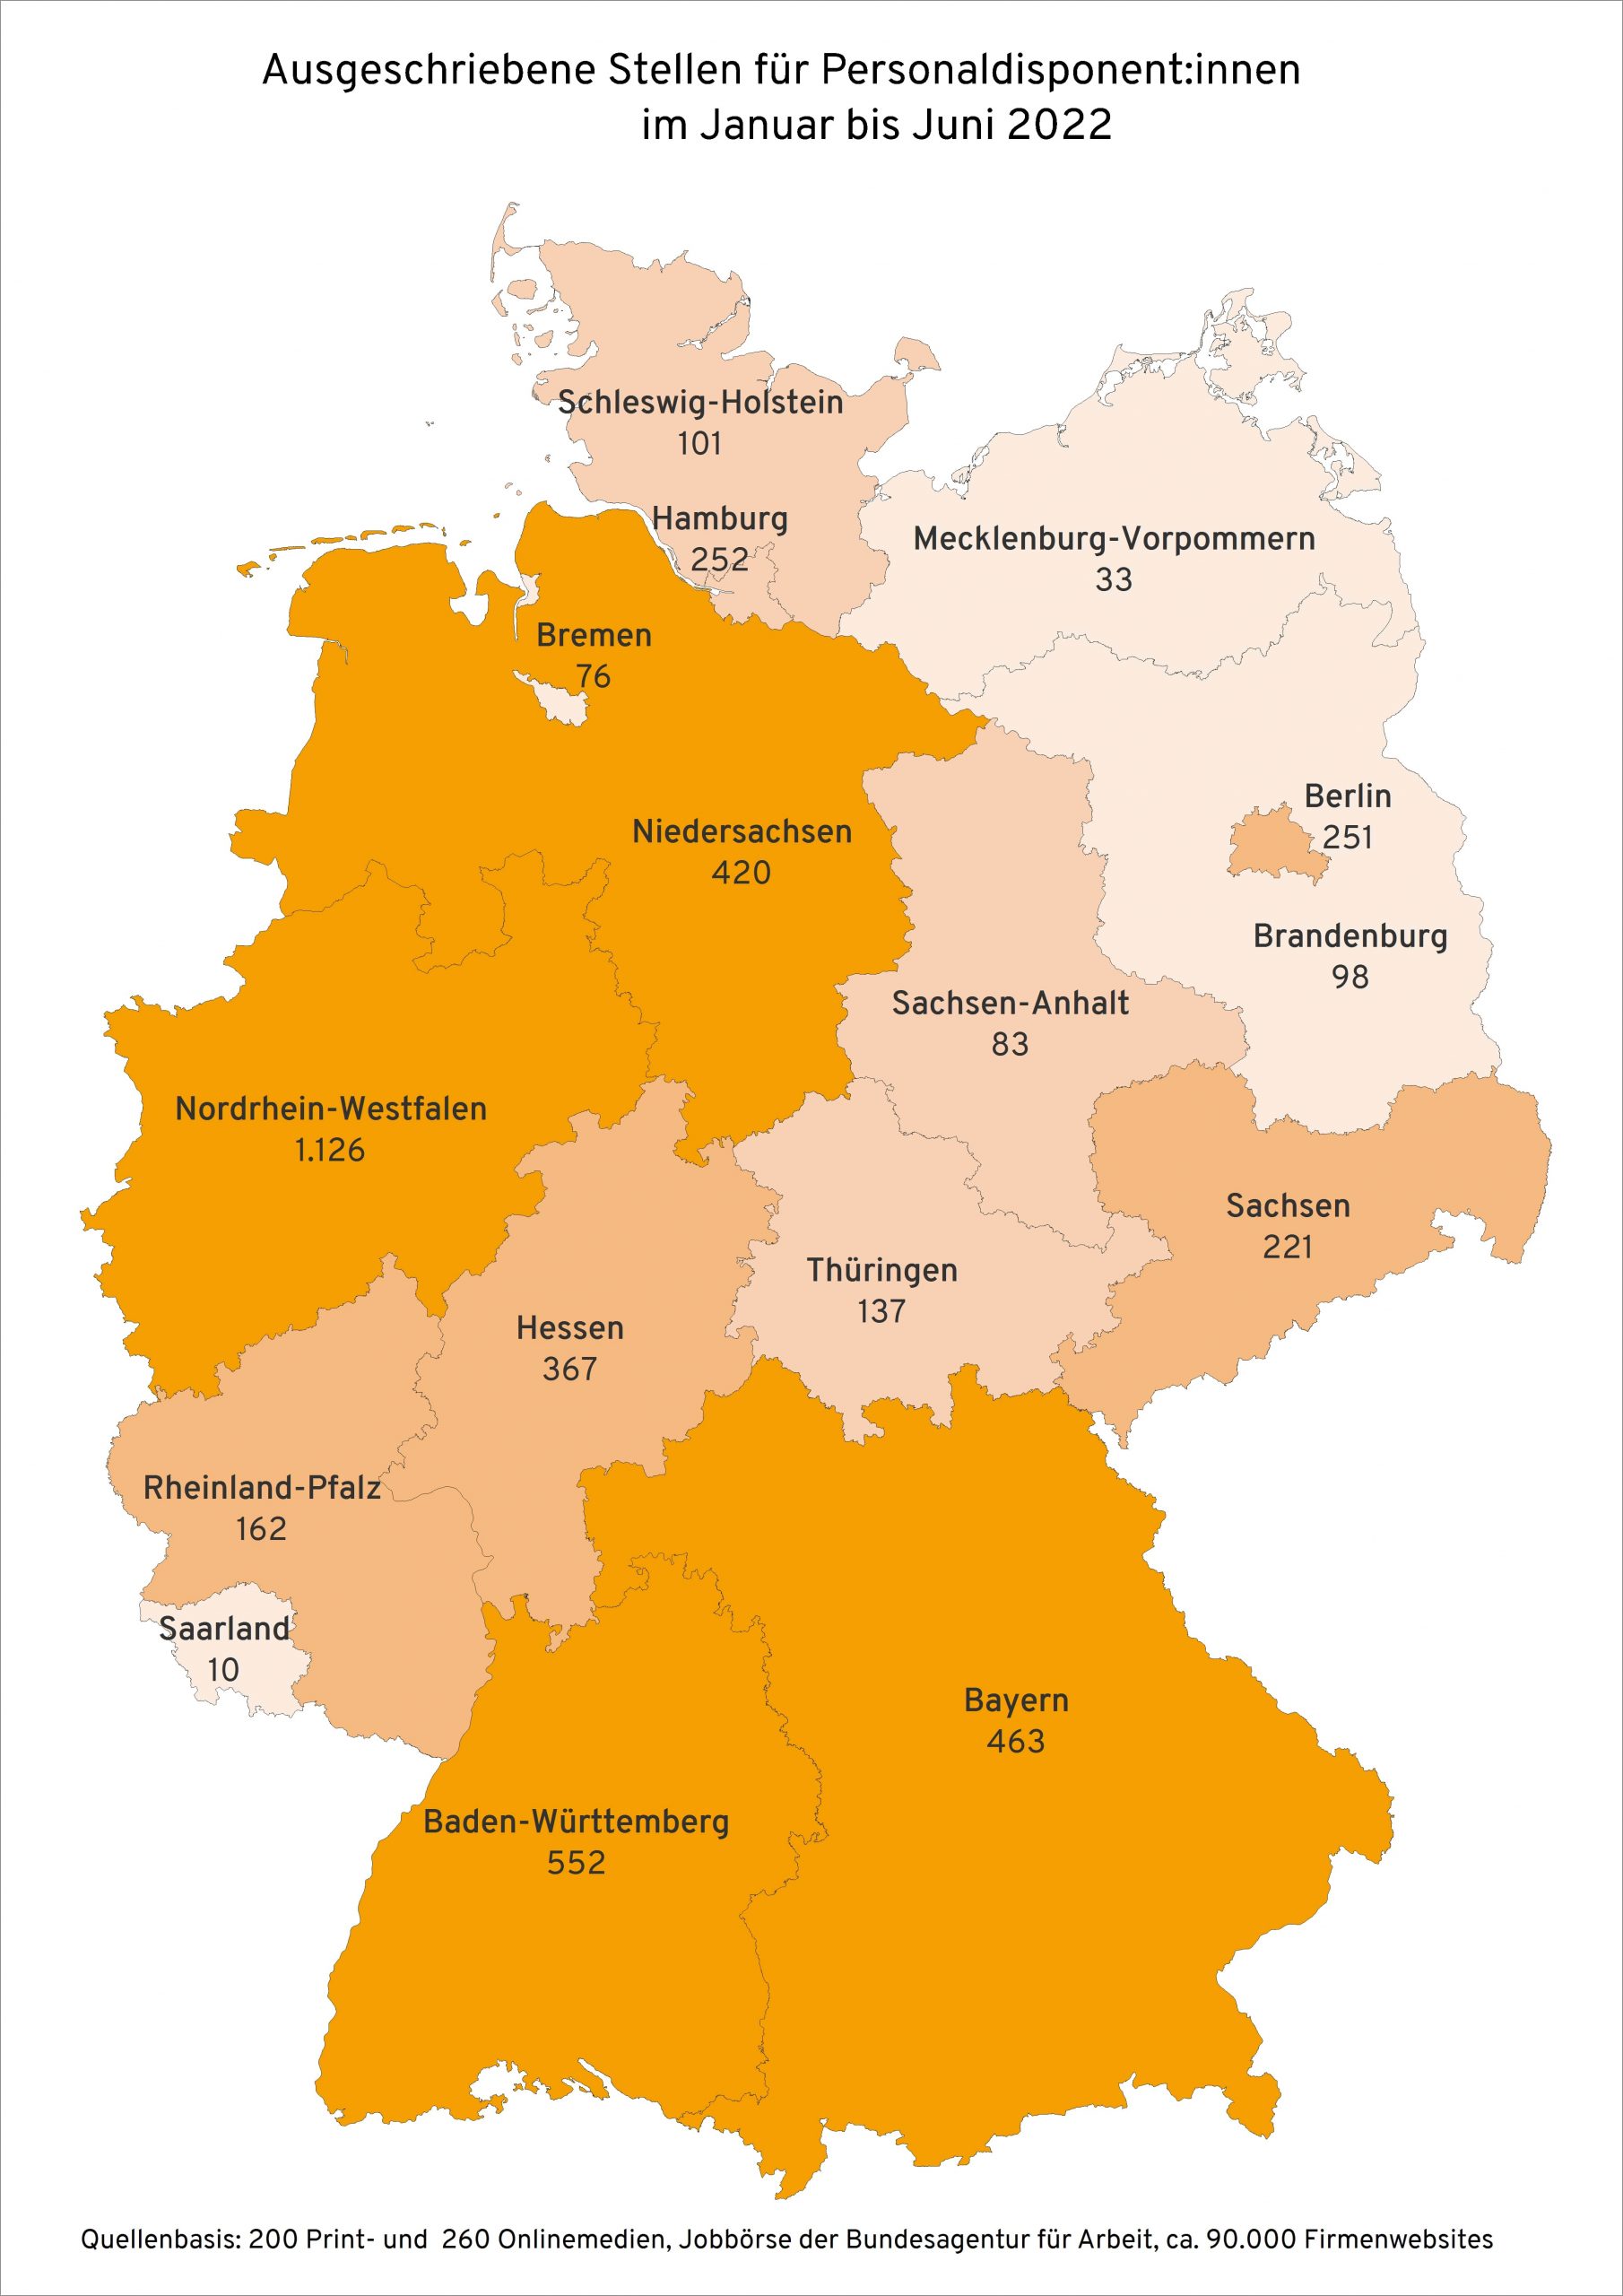 Ausgeschriebene Stellen für Personaldisponent:innen in deutschen Bundesländern im ersten Halbjahr 2022